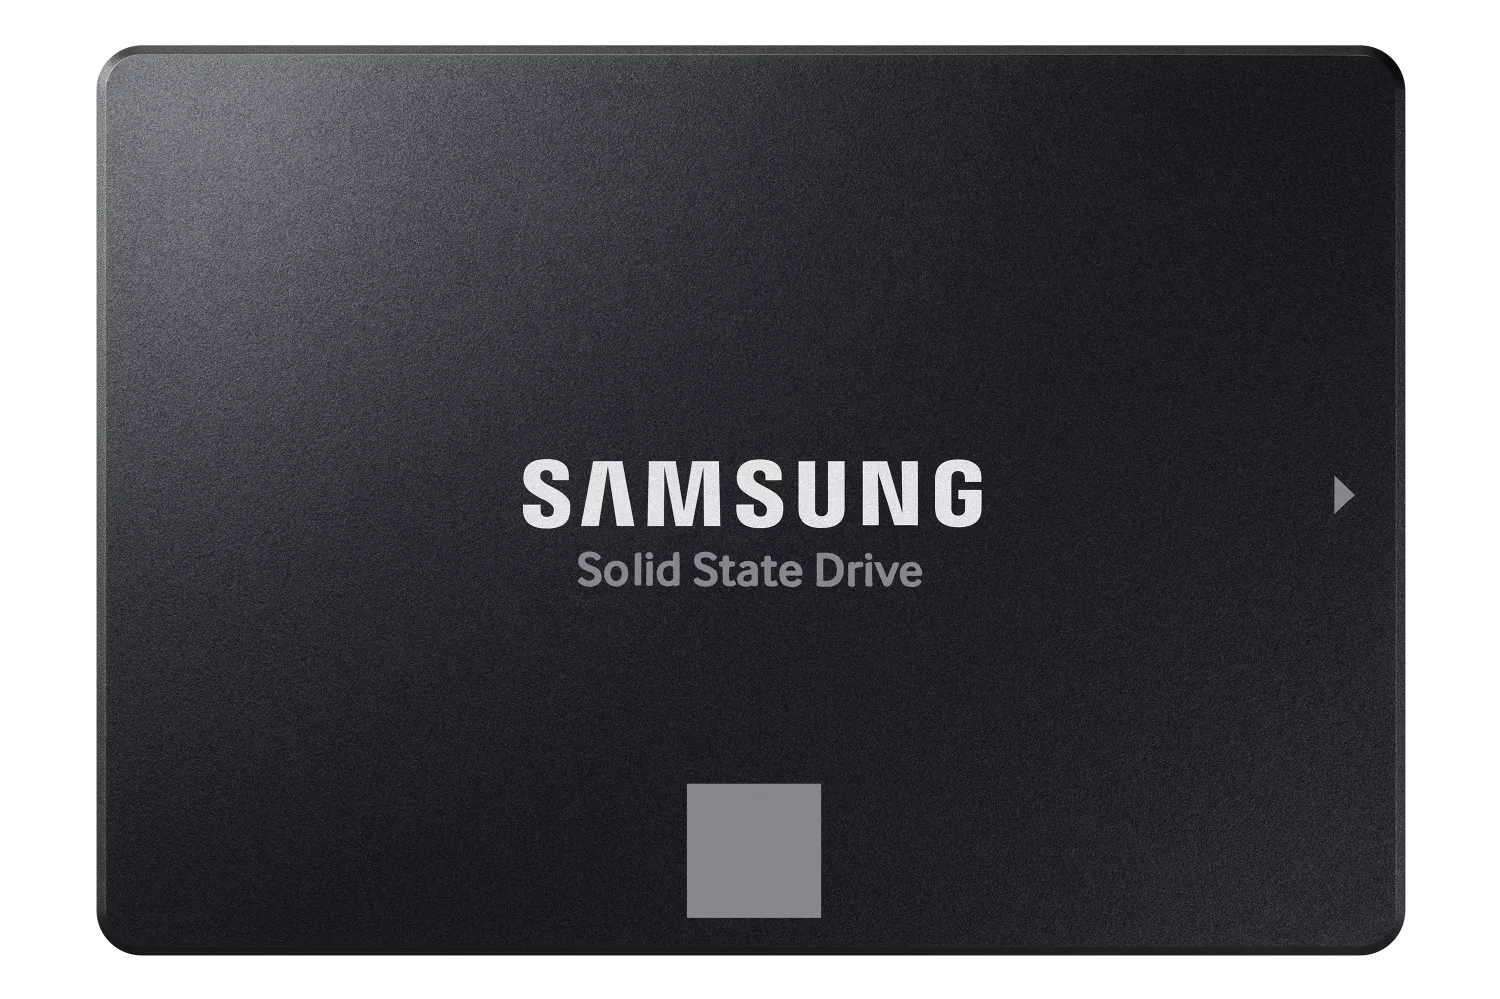 Новые SATA SSD Samsung 870 EVO прокачались в скоростях